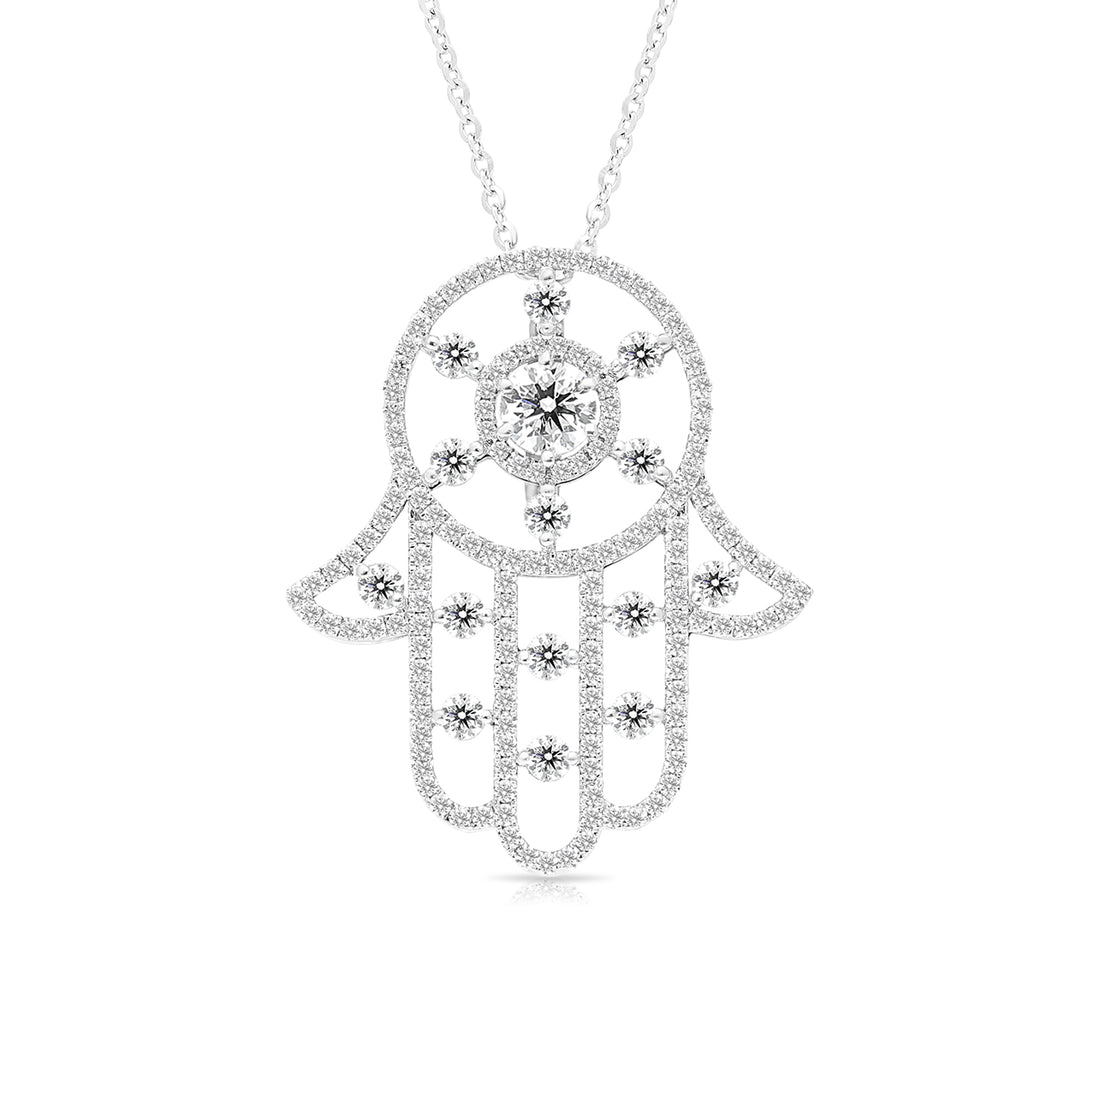 Diamond Hamsa Pendant Necklace - 1.75 Carat